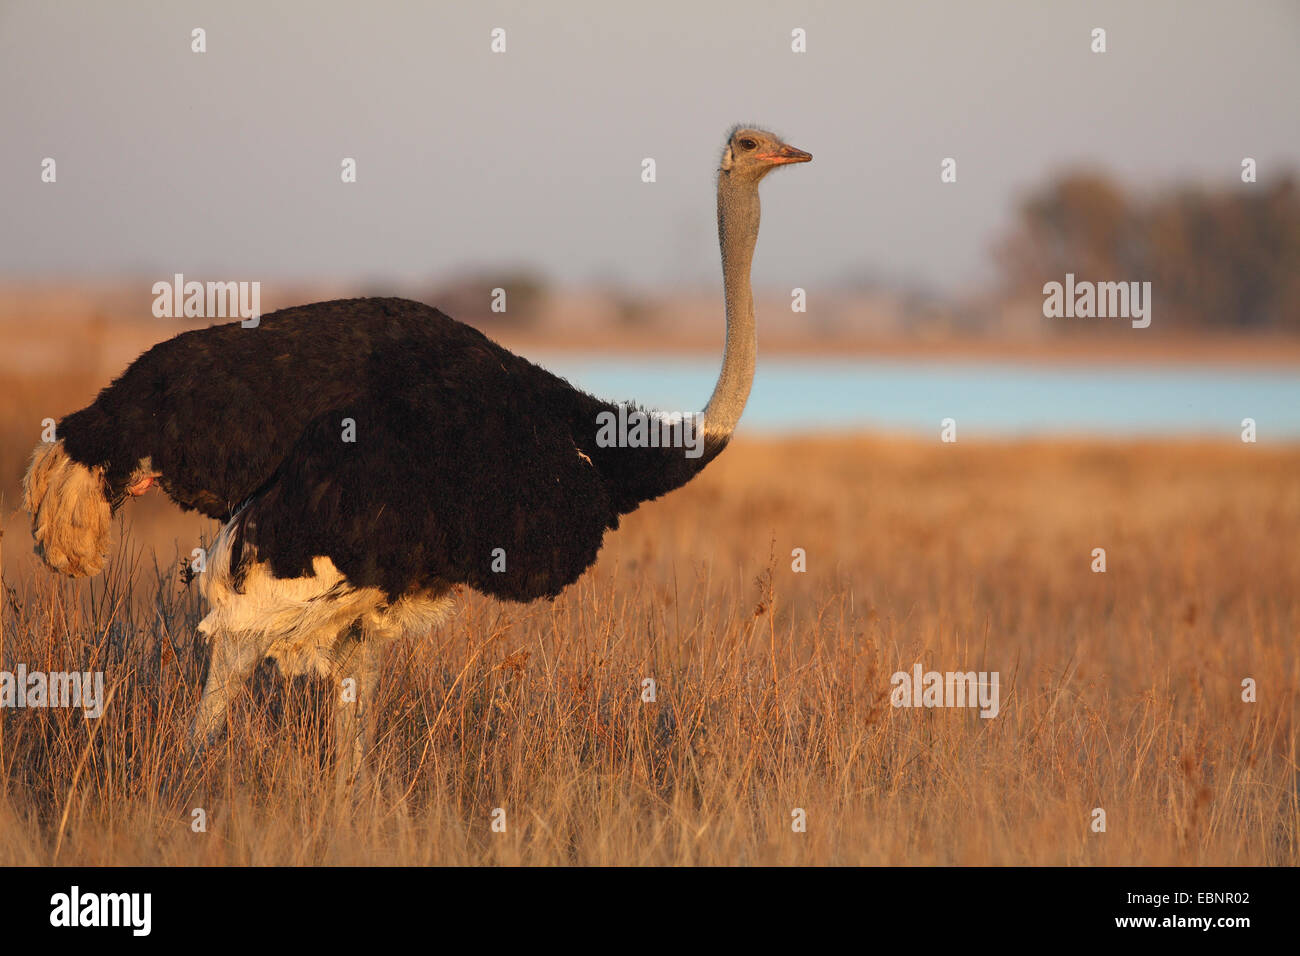 Südlichen Strauß (Struthio Camelus Australis, Struthio Australis), männliche steht im Grünland, Südafrika, Barberspan Bird Sanctuary Stockfoto